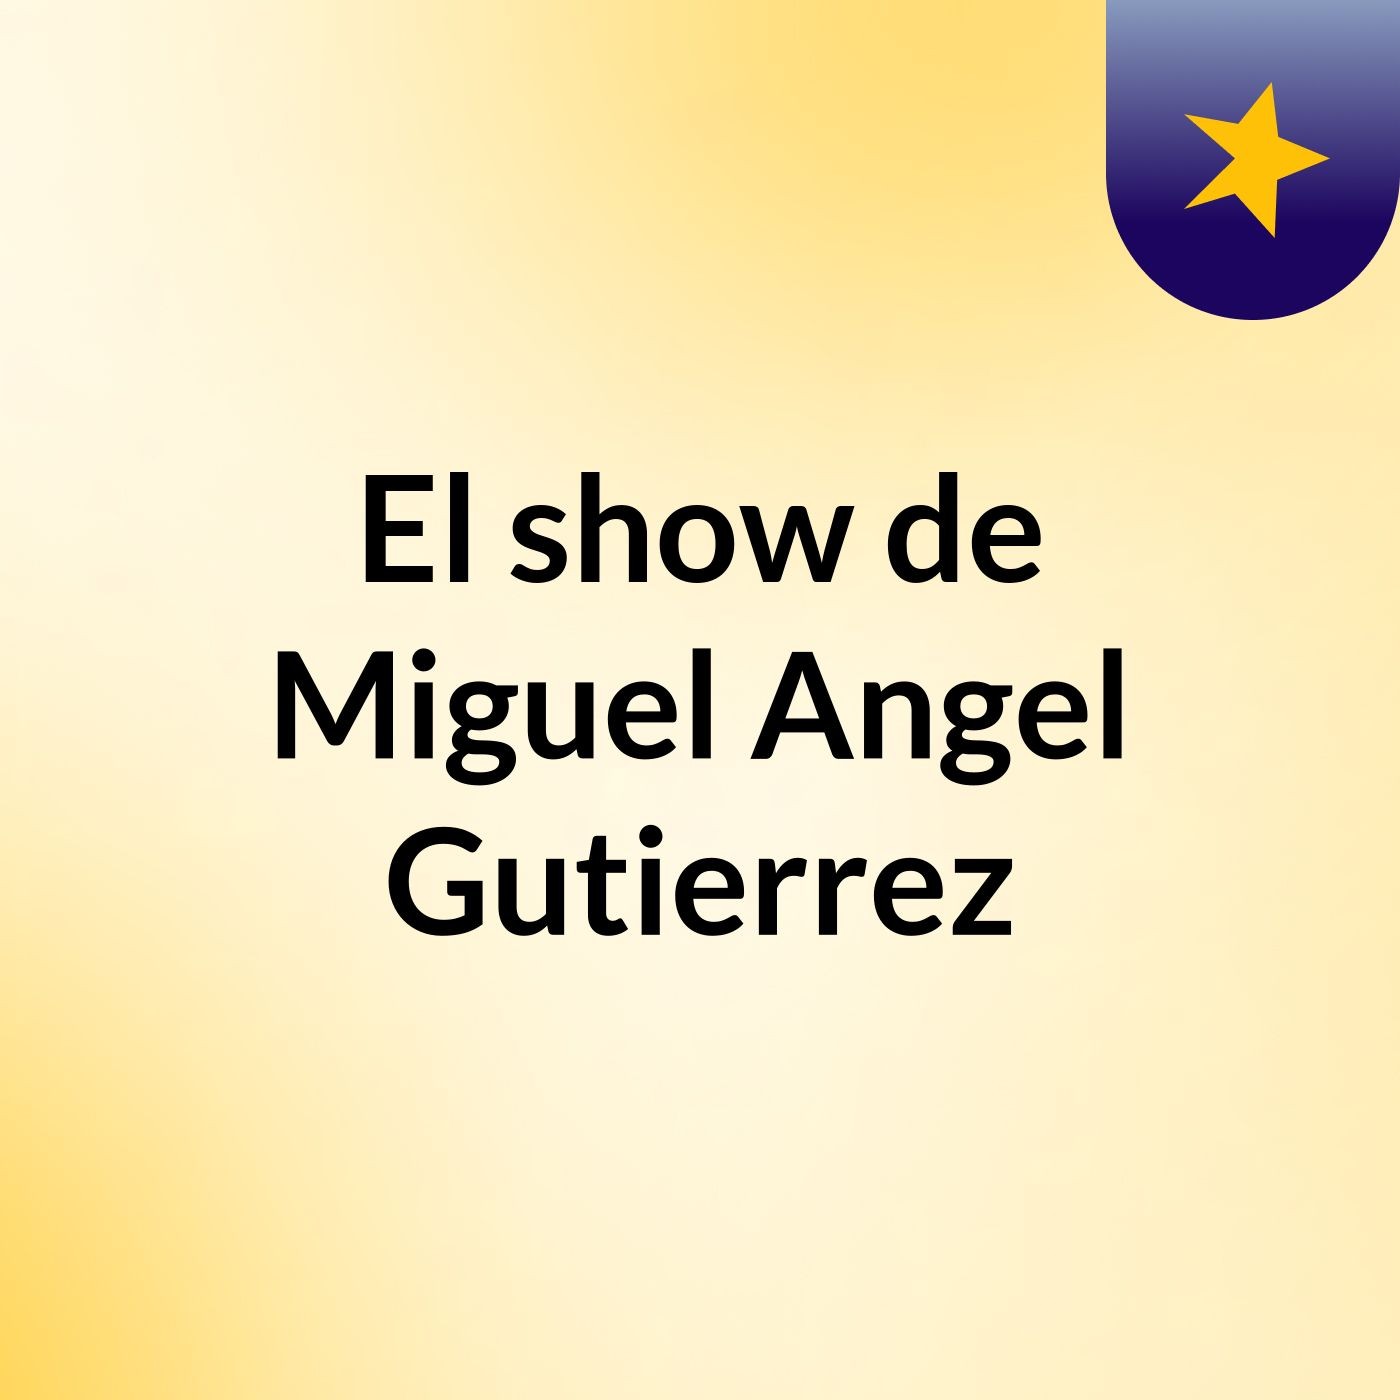 El show de Miguel Angel Gutierrez